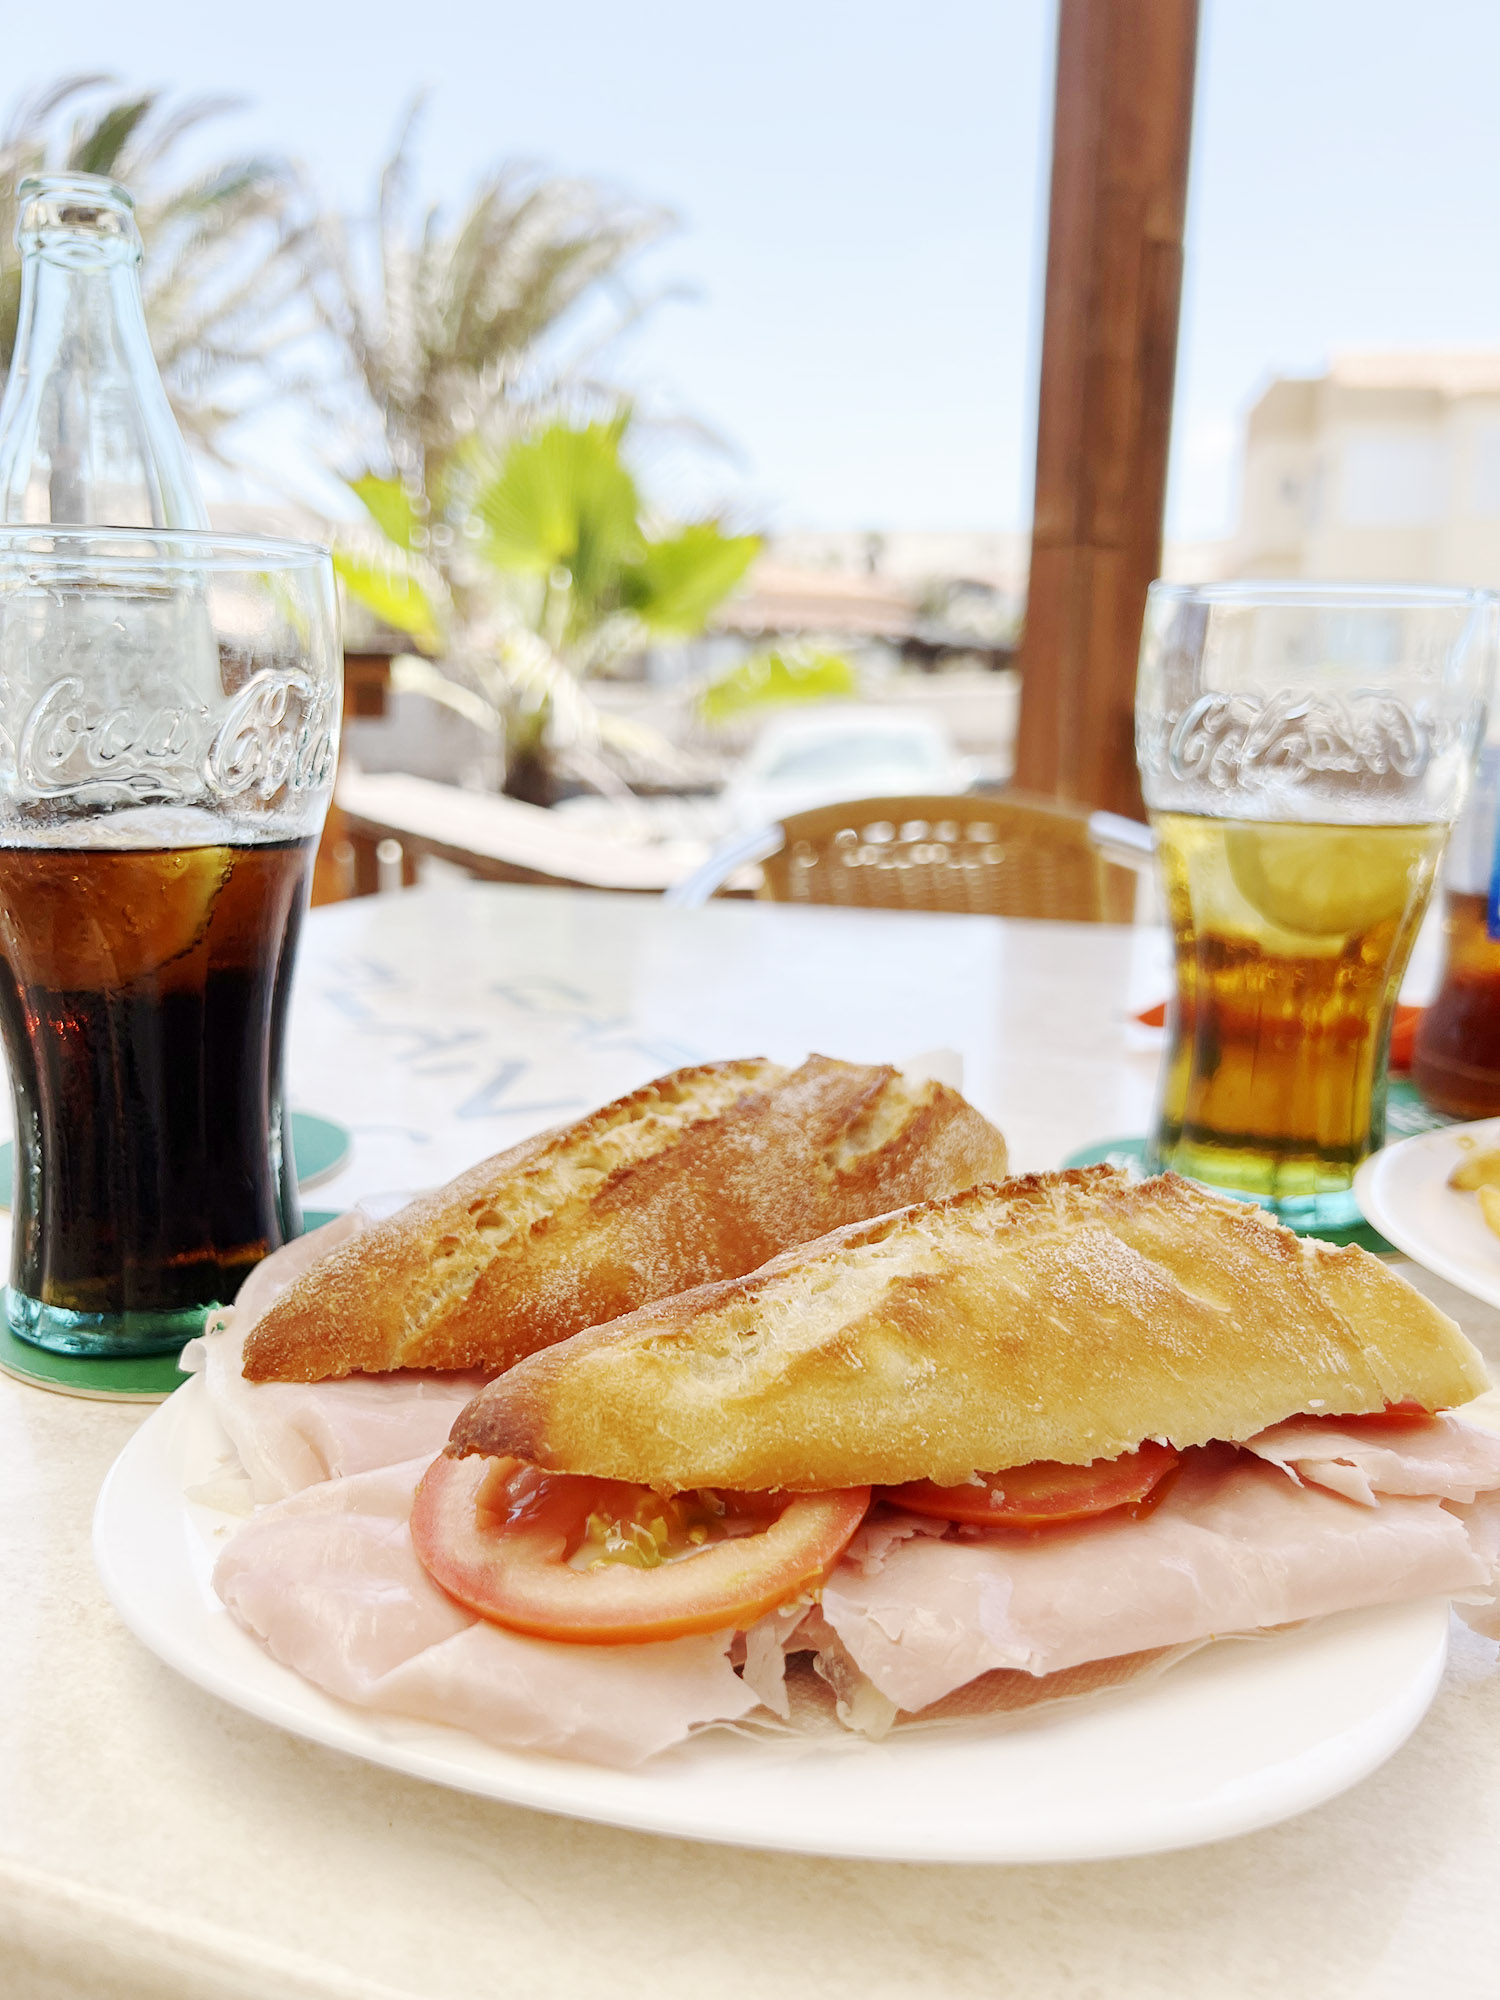 Fuerteventura: Plan B - Lunch i La Pared